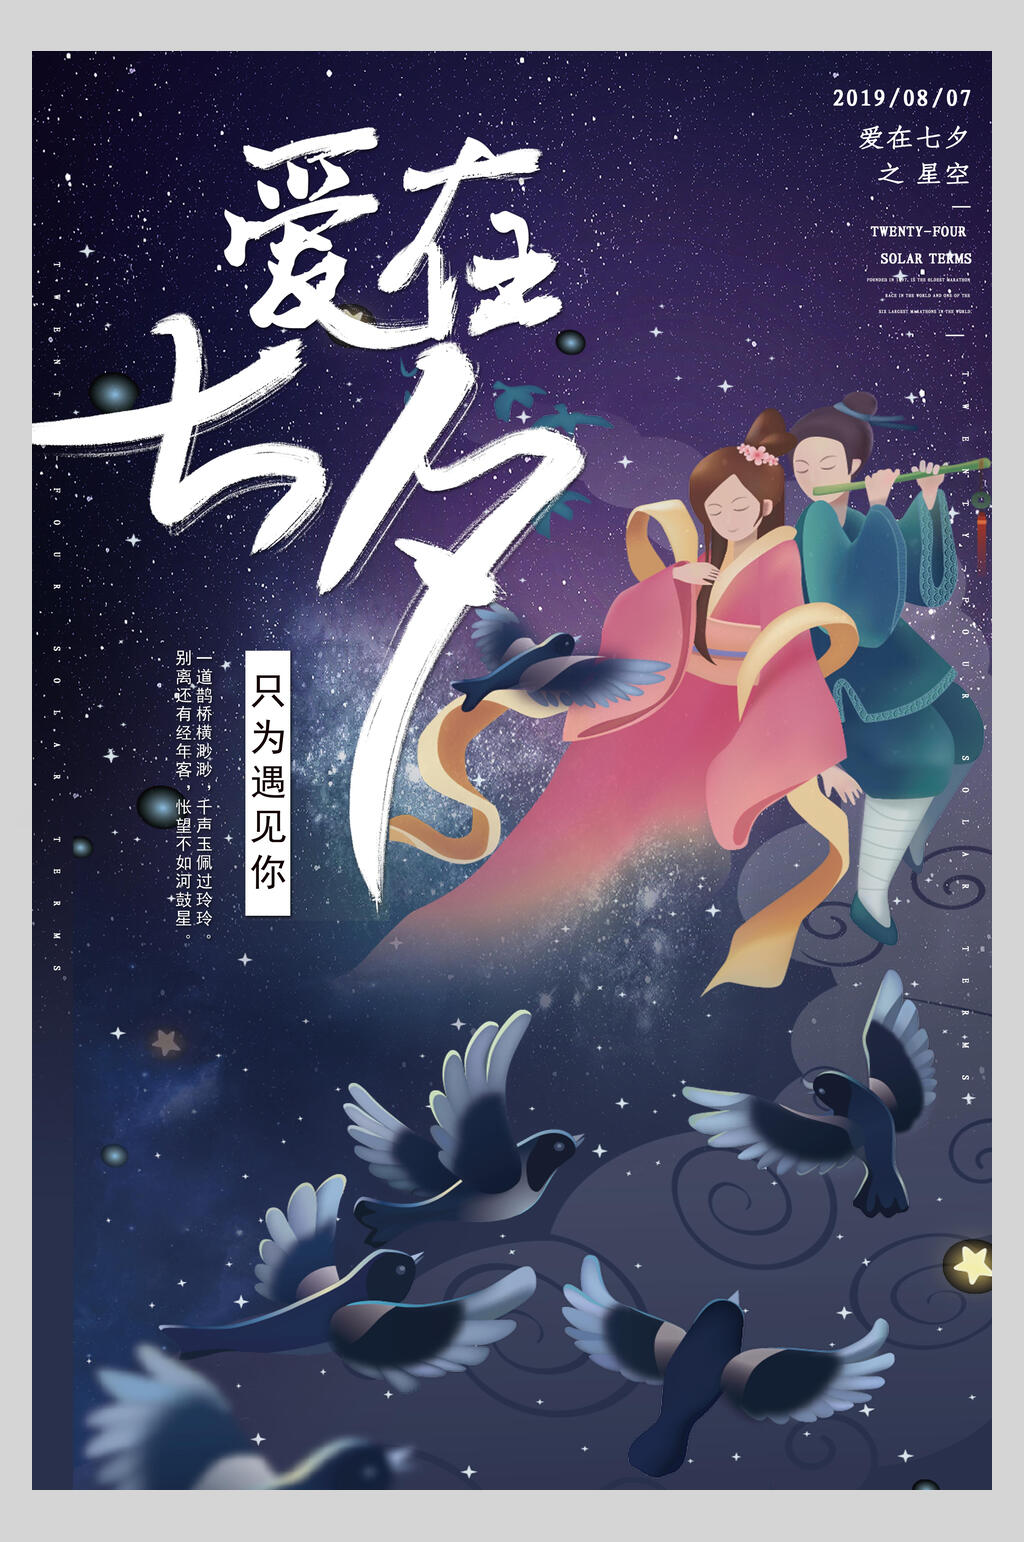 众图网独家提供仙鹤爱在七夕情人节海报素材免费下载,本作品是由小红